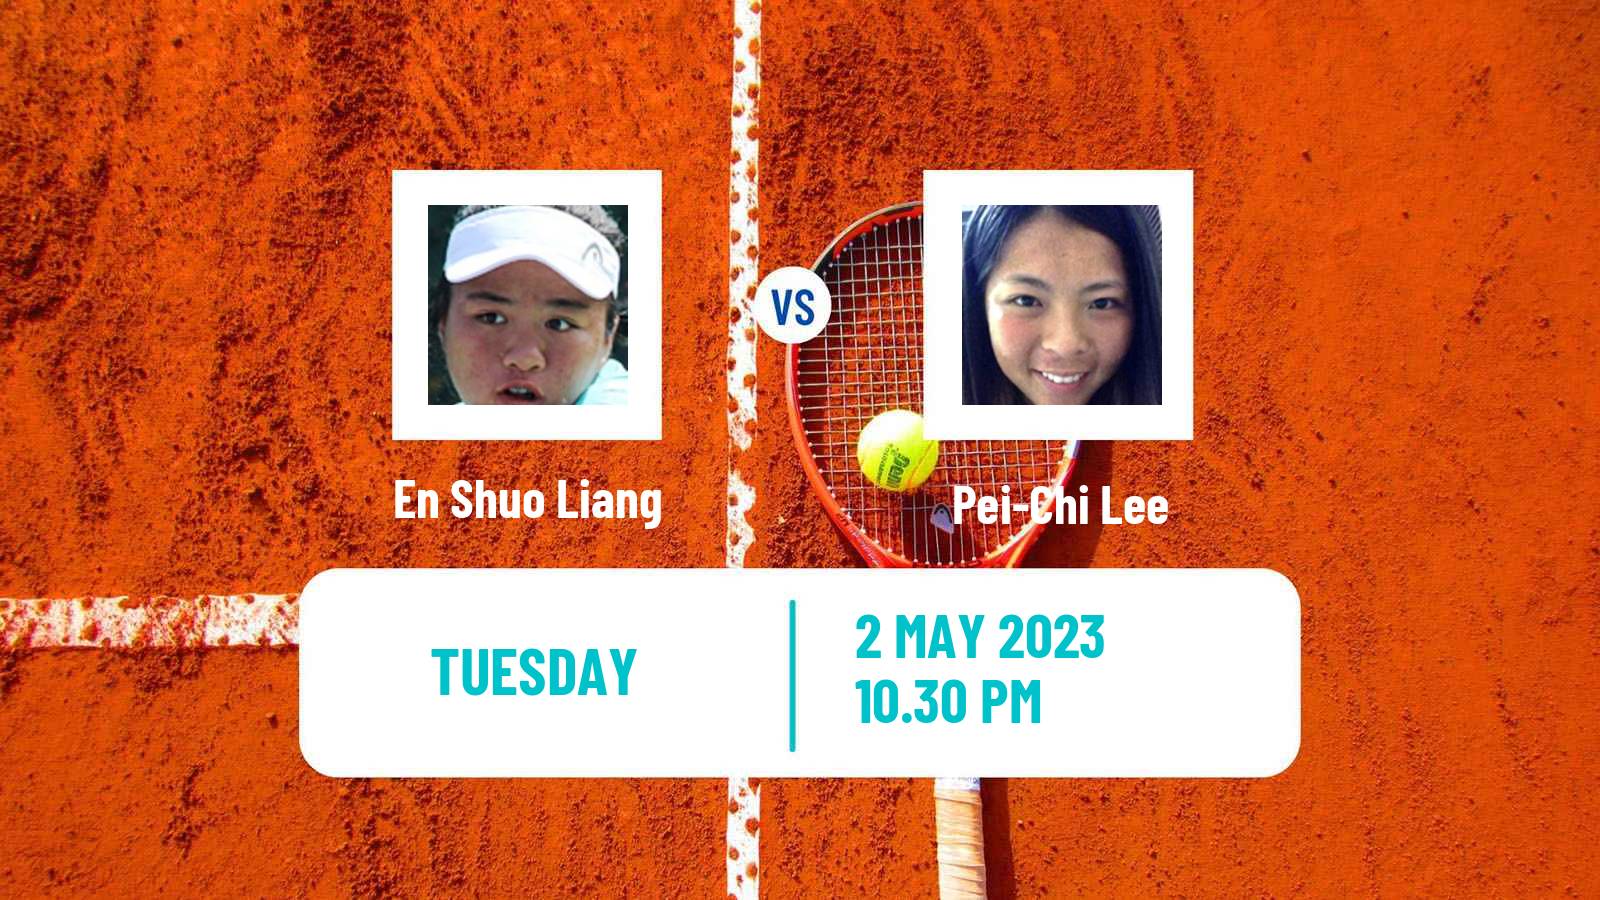 Tennis ITF Tournaments En Shuo Liang - Pei-Chi Lee